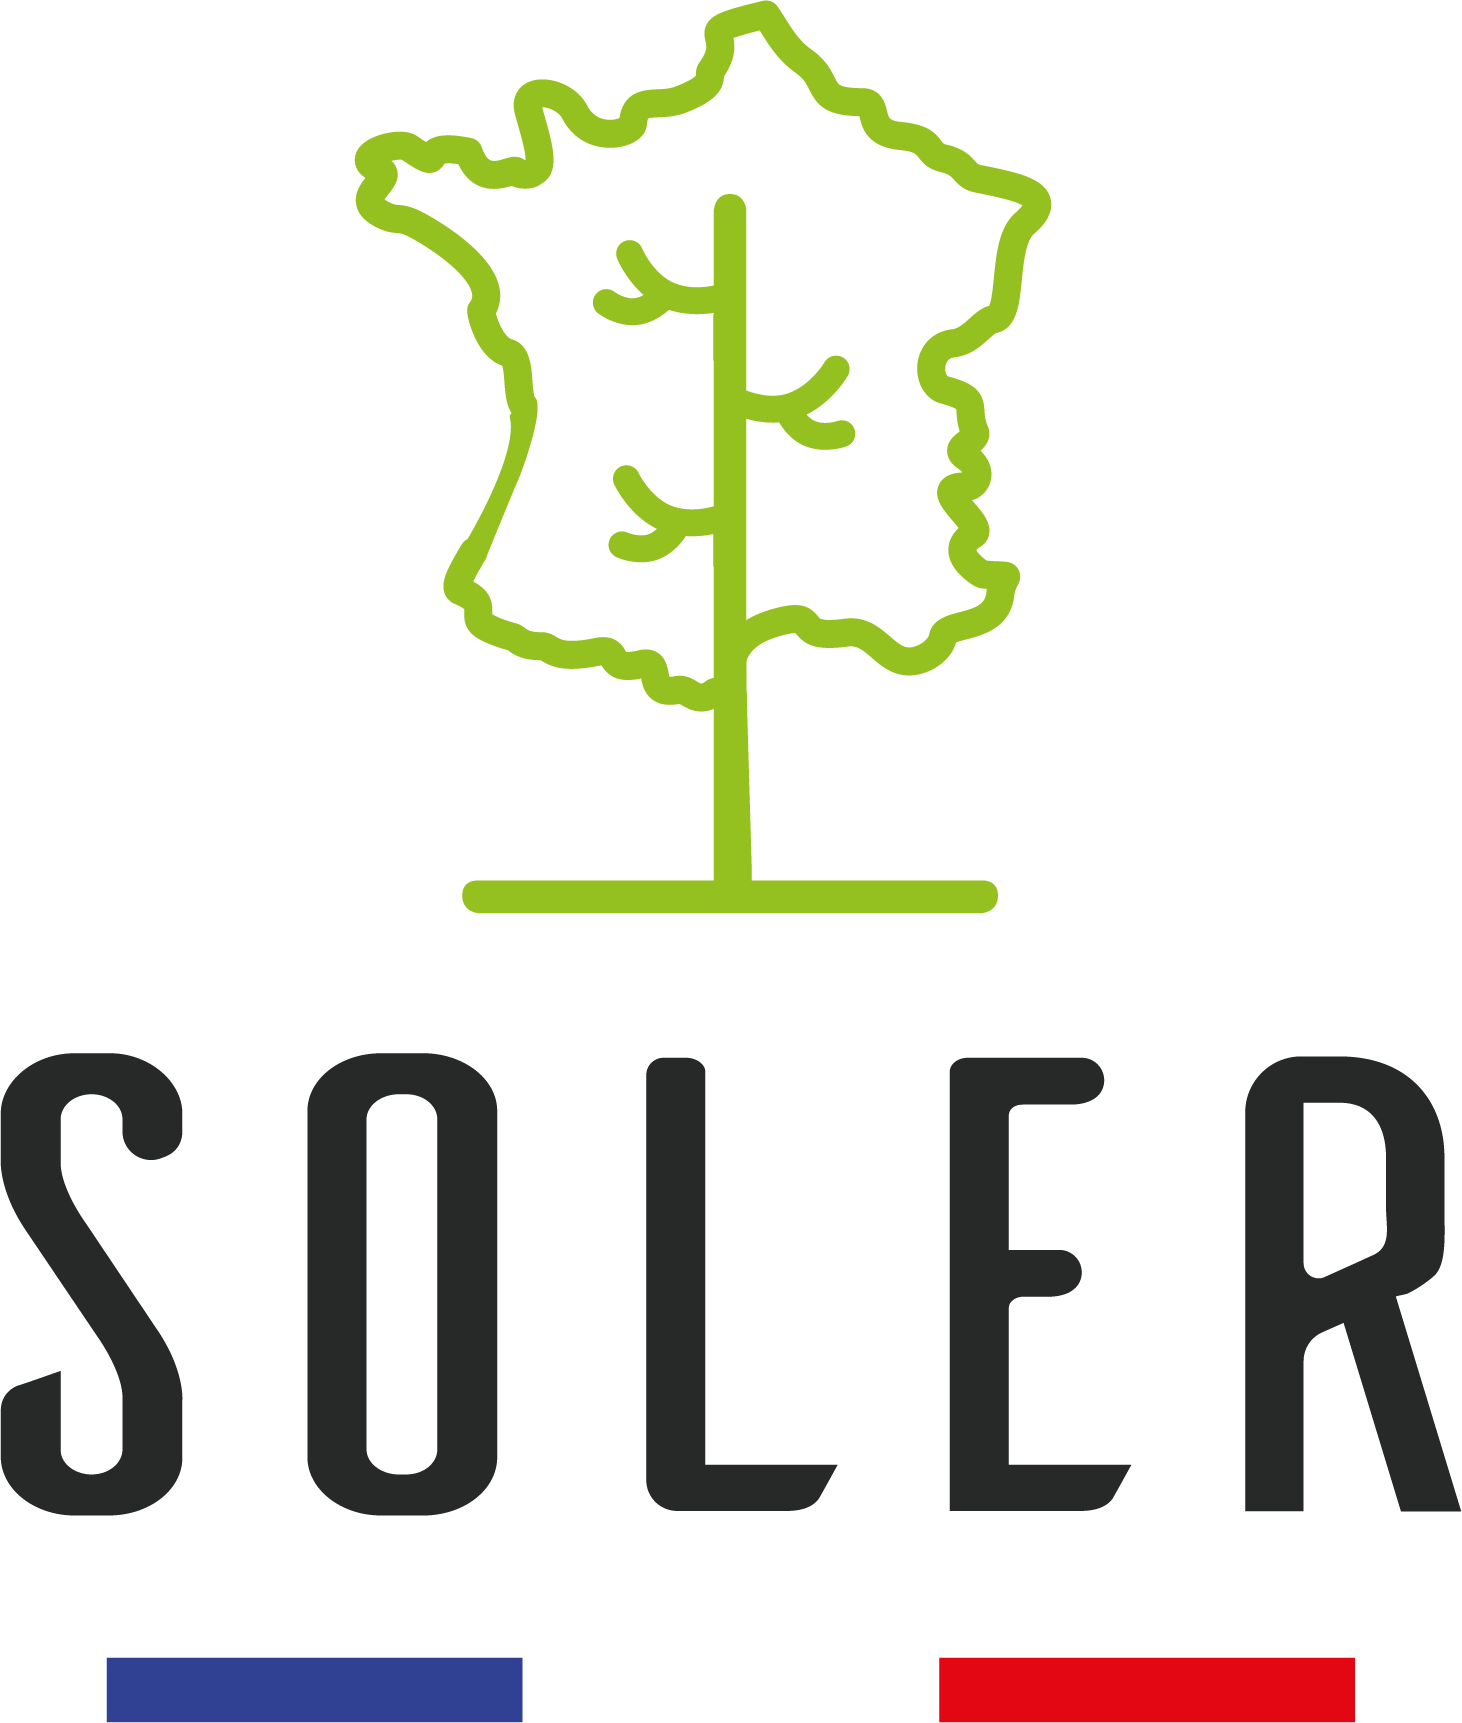 SOLER Logo Drapeau E Pais Couleur 2 1 